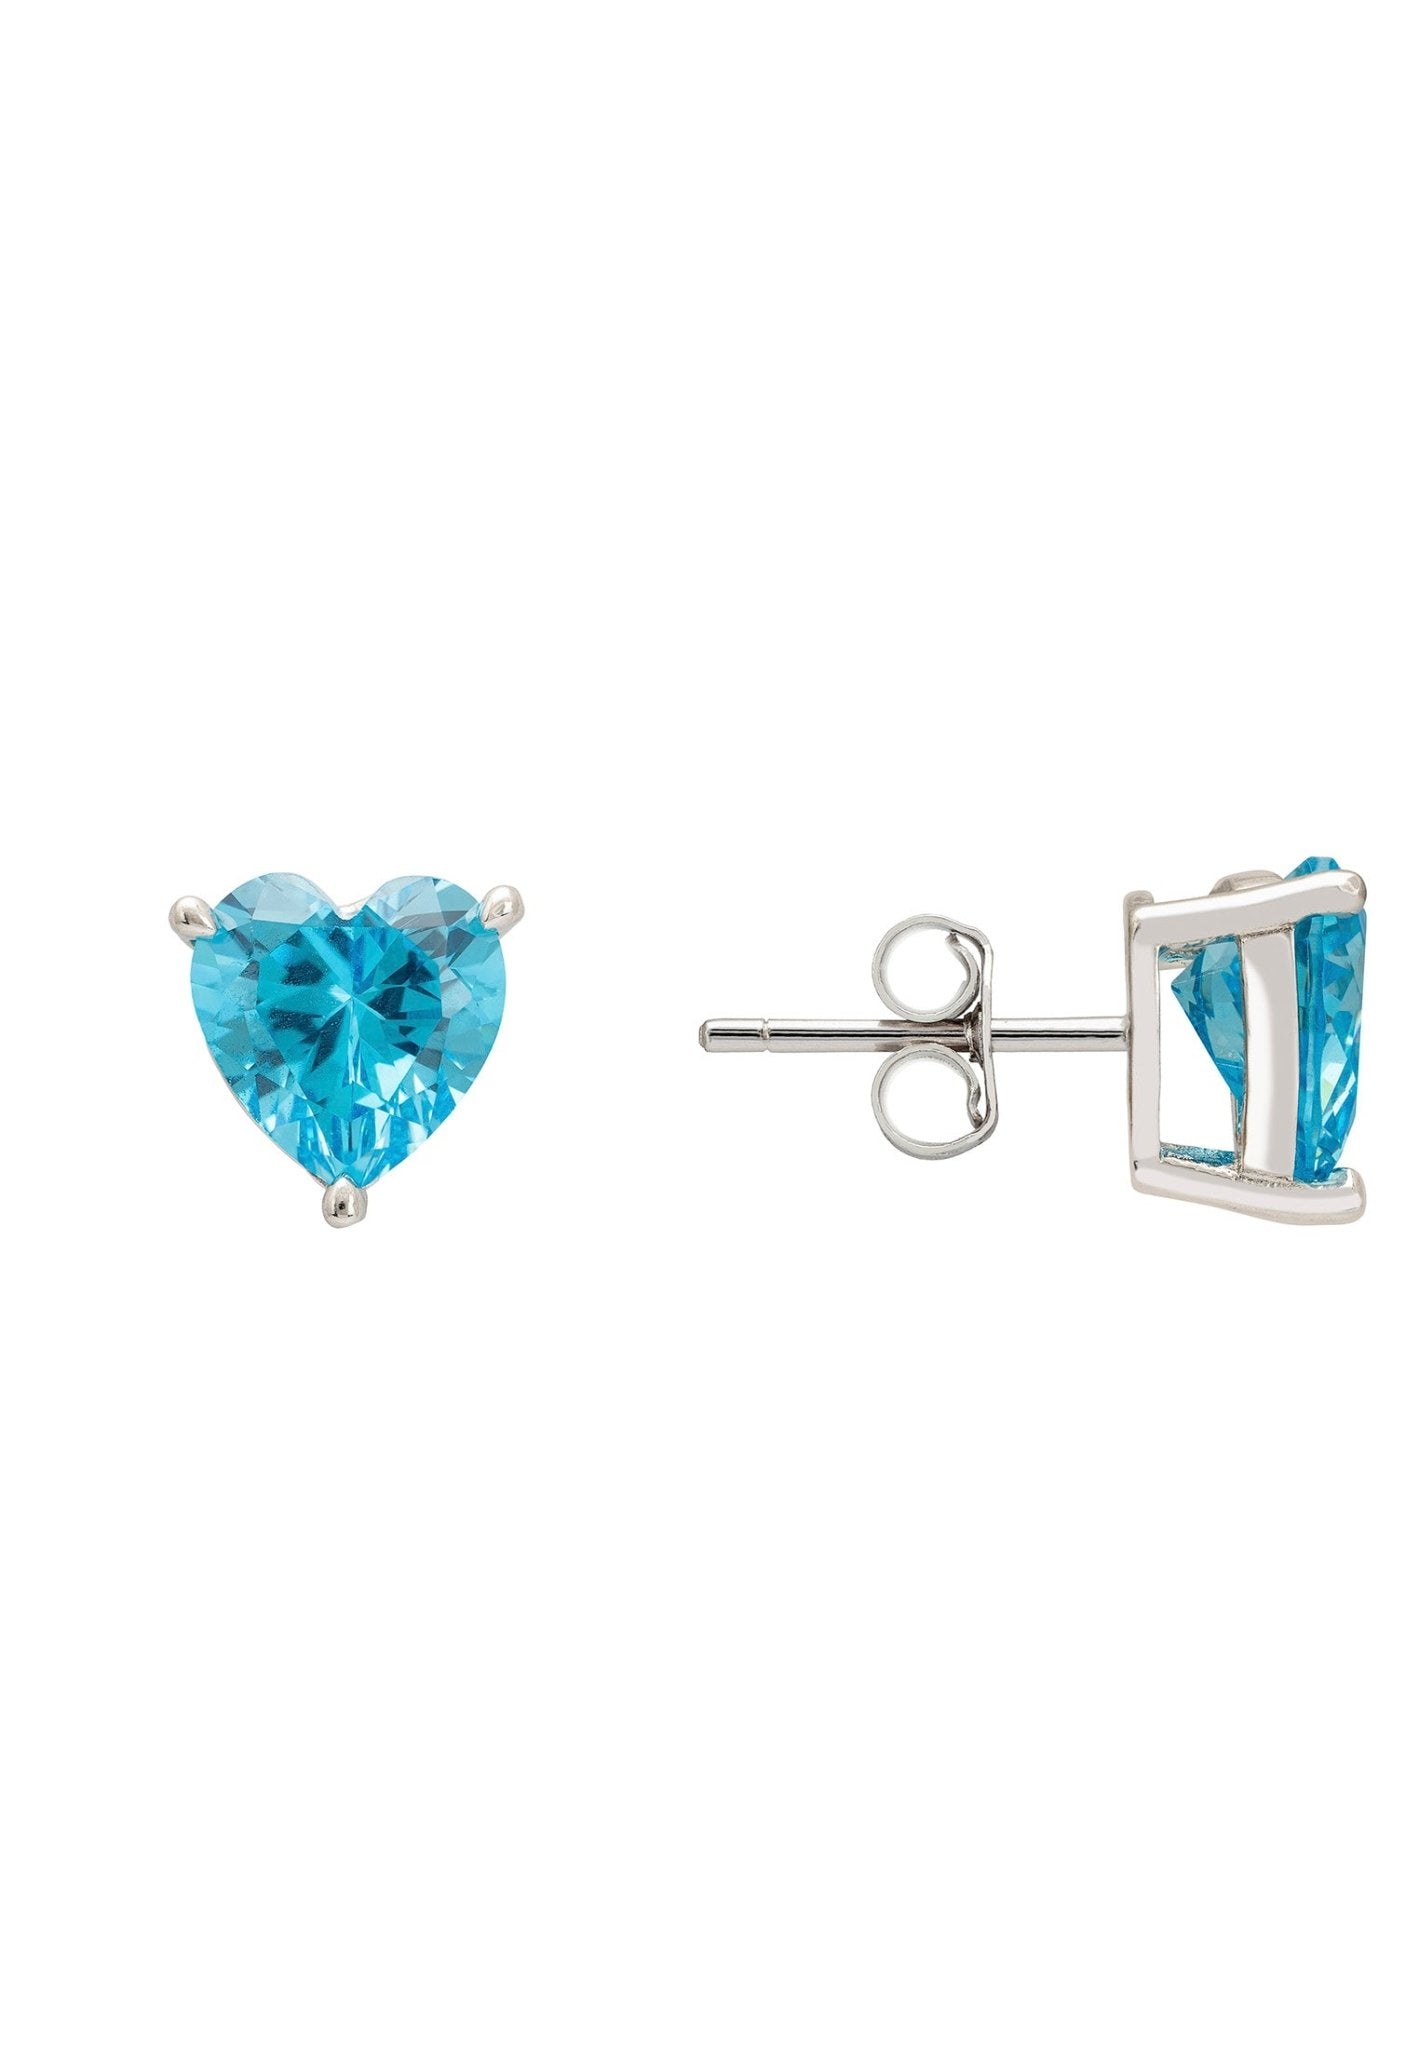 Amore Heart Stud Earrings Blue Topaz Silver - LATELITA Earrings